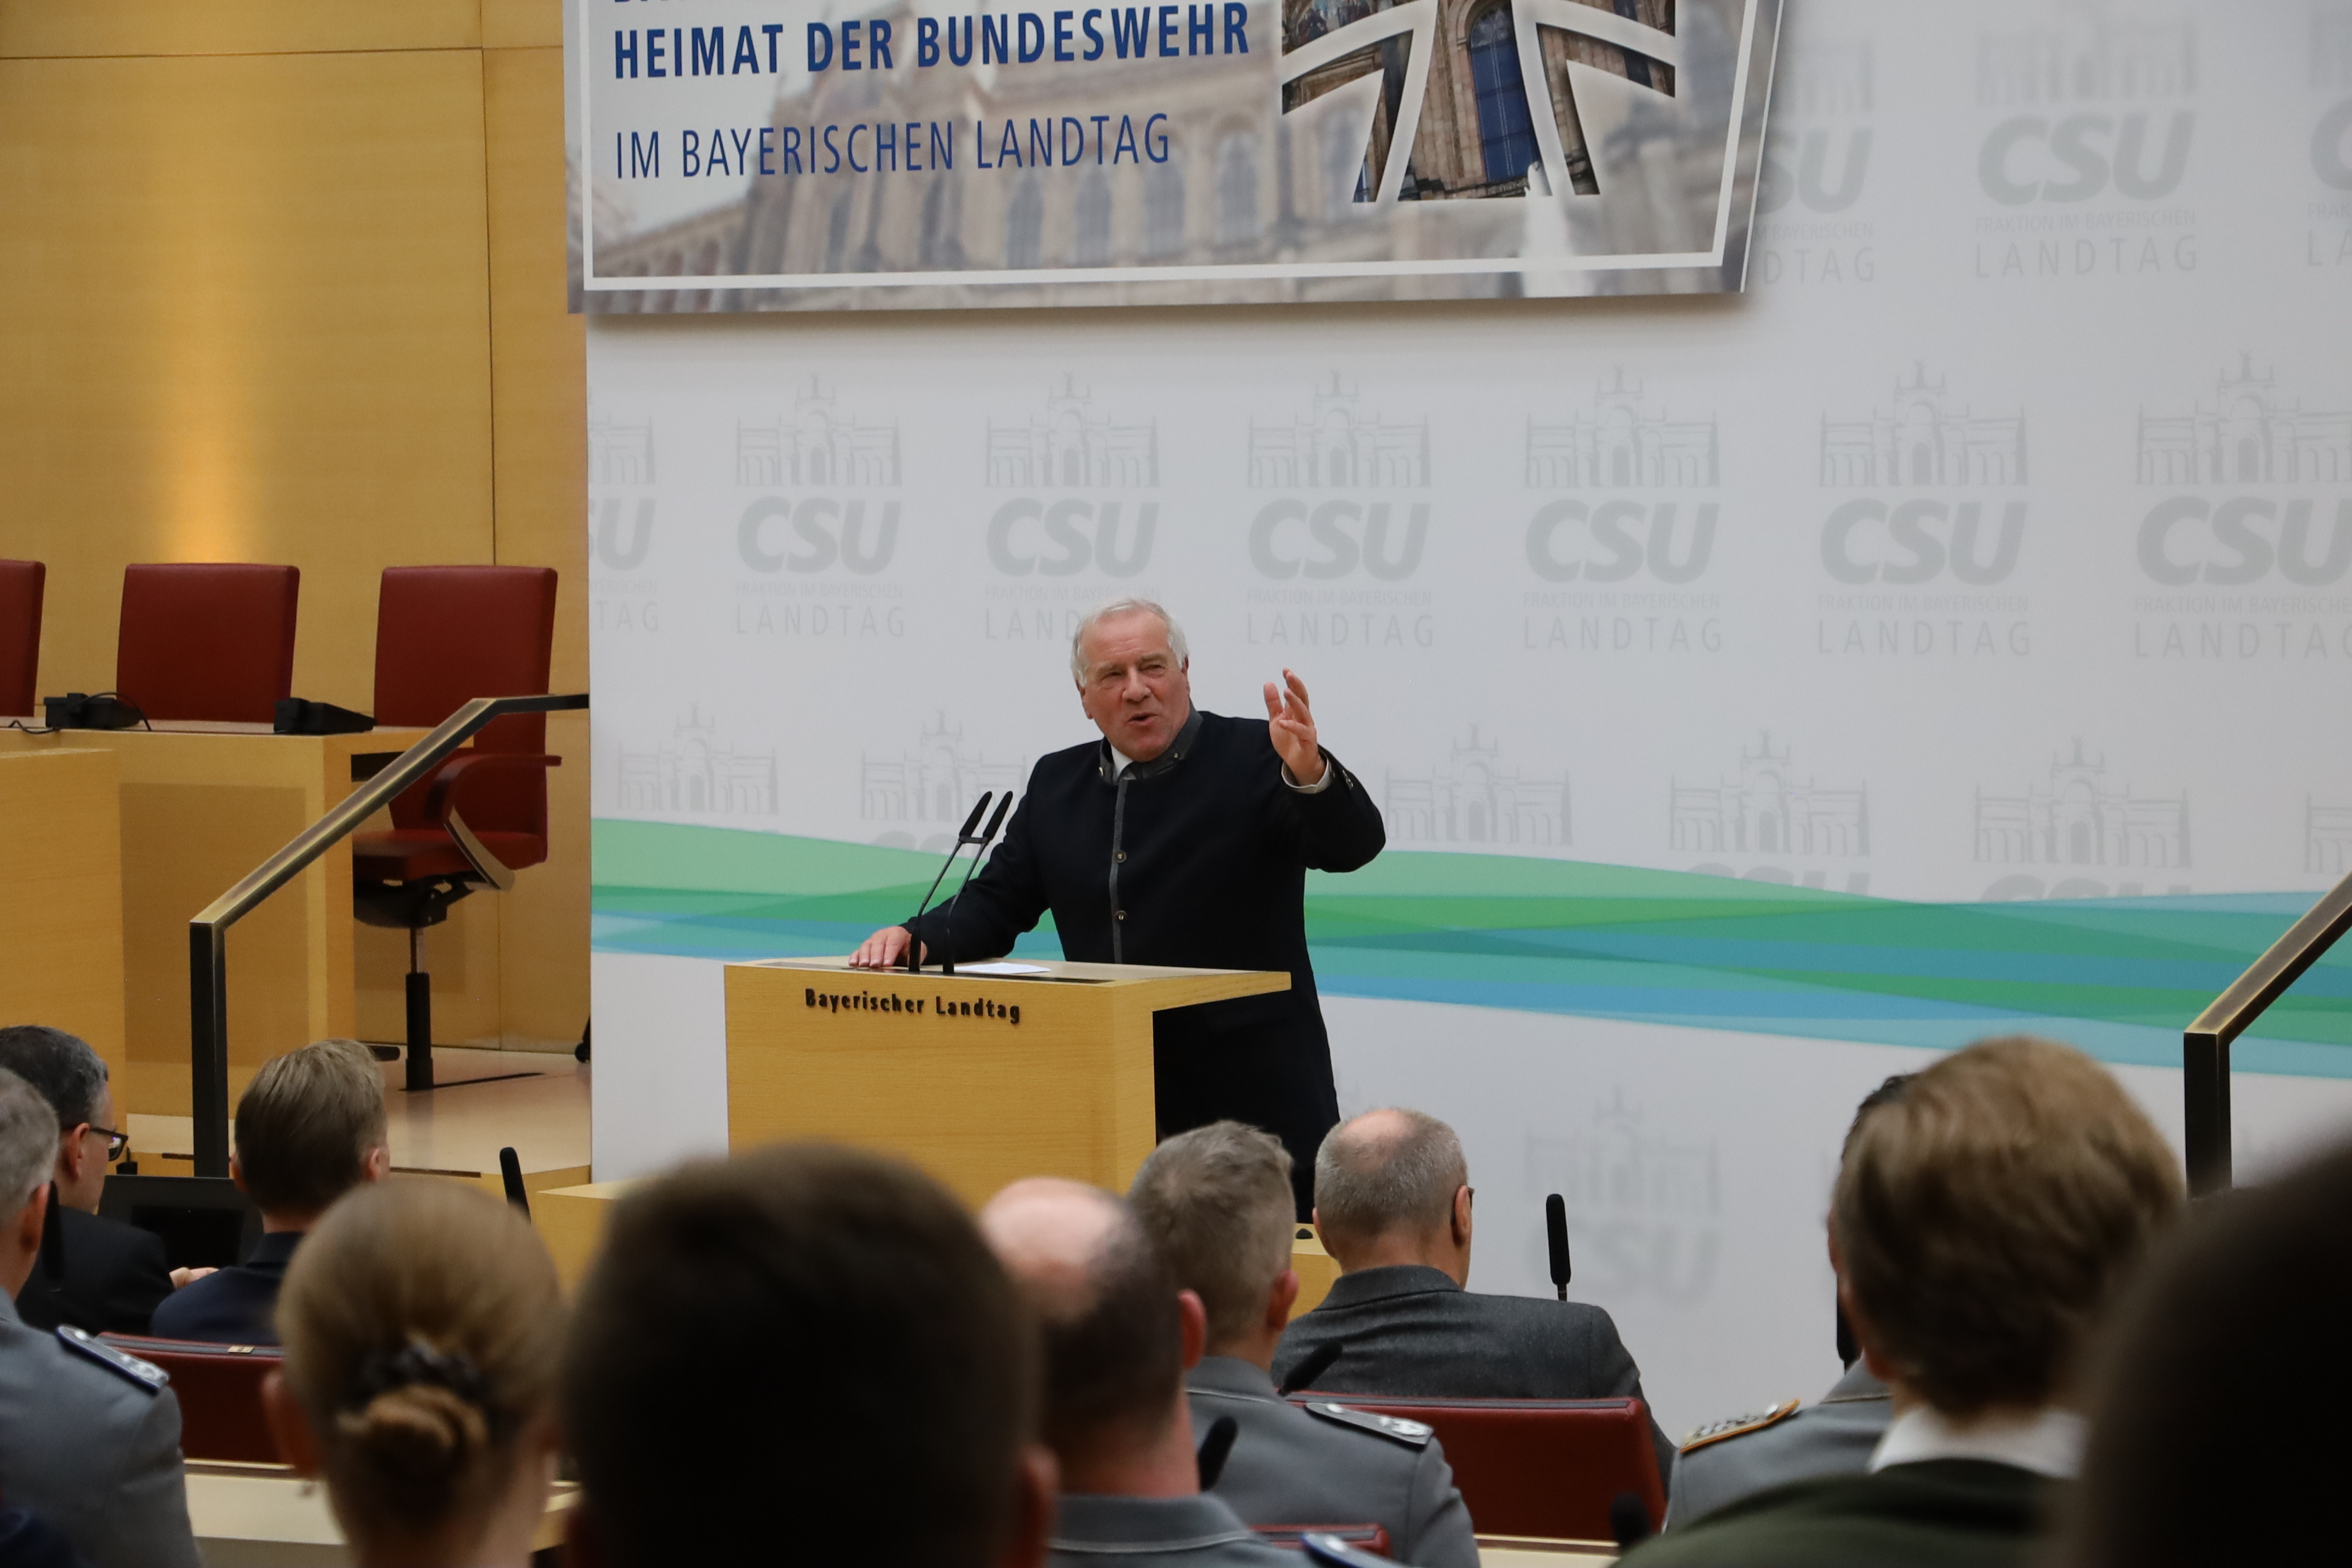 Johannes Hintersberger, Vorsitzender des Arbeitskreises Wehrpolitik, zeigte sich hocherfreut über die Anwesenheit so vieler Kameradinnen und Kameraden und konstatierte: 